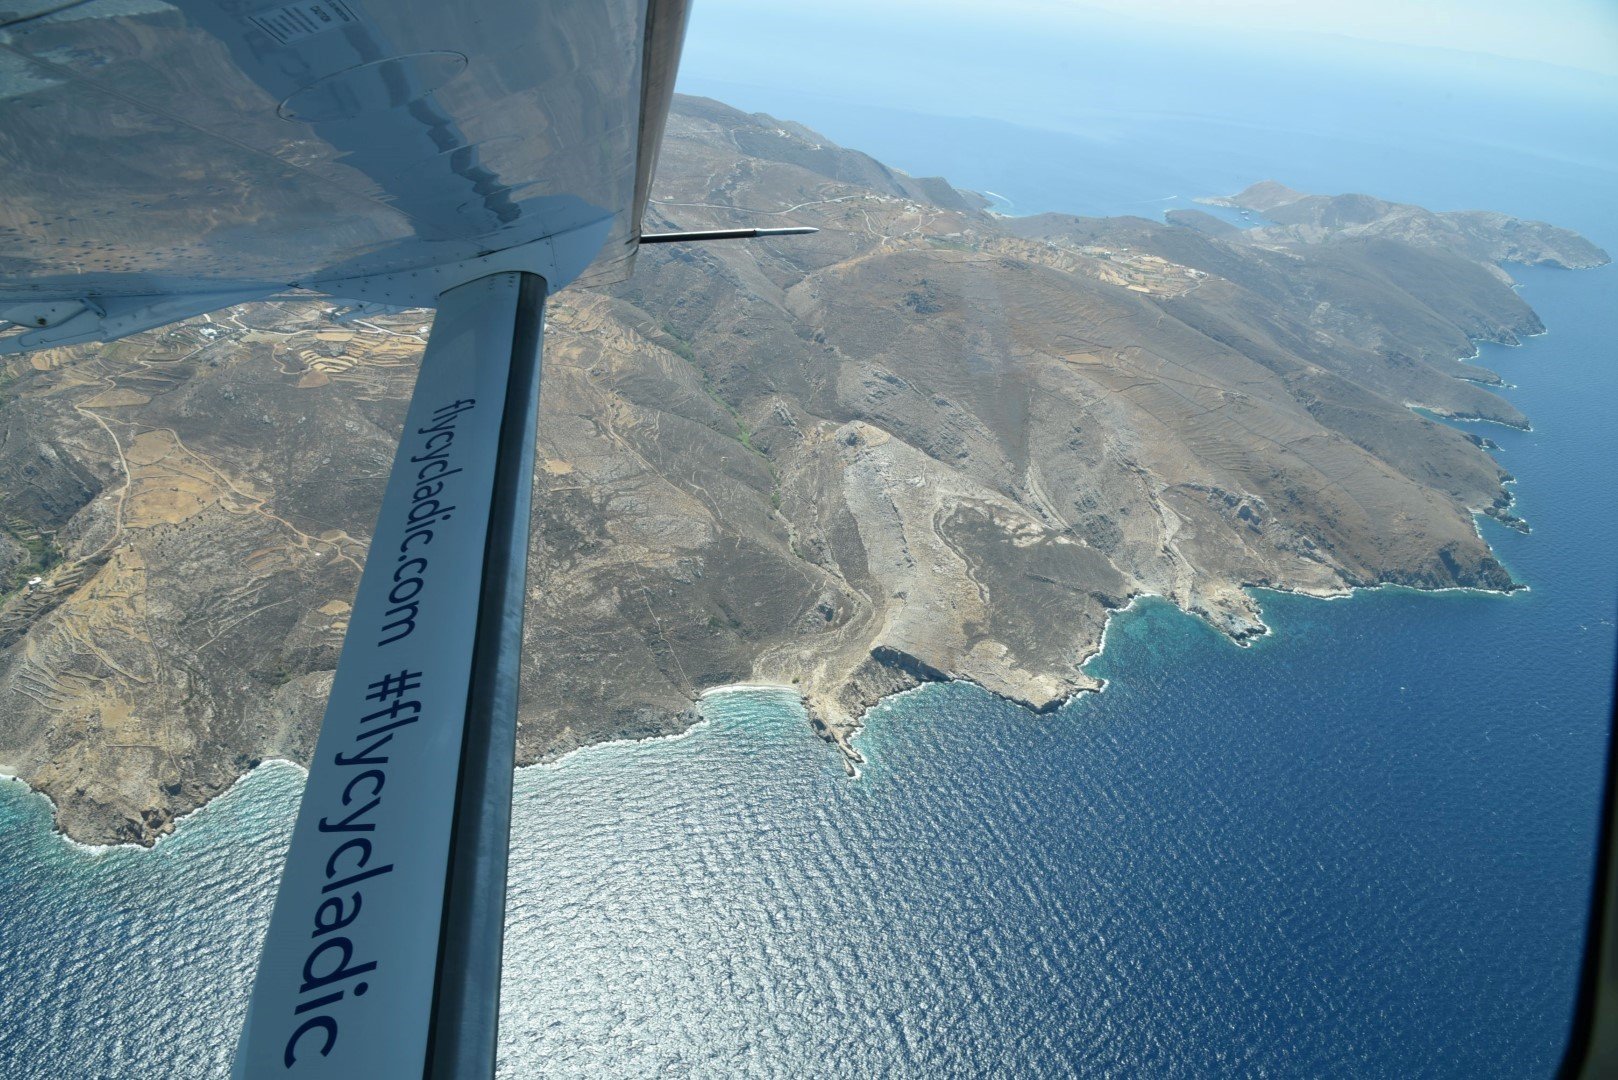 Cycladic: Ηλεκτρικά αεροσκάφη στην Ελλάδα (;)